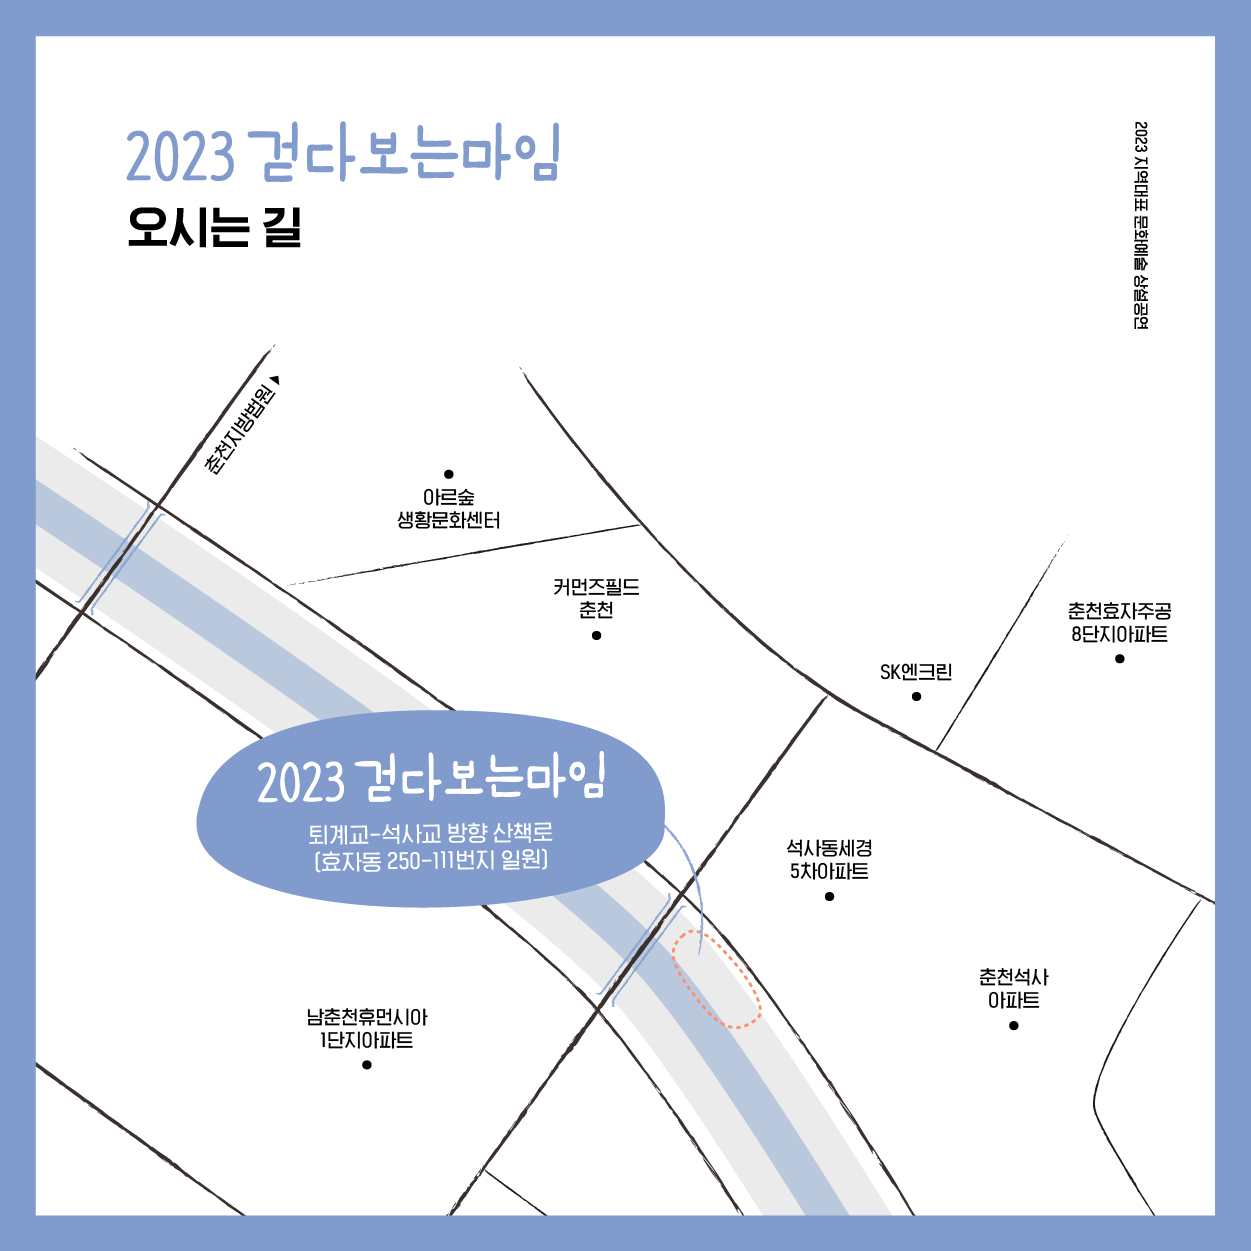 2023 지역대표 문화예술 상설공연 ｢걷다보는 마임｣ 공연